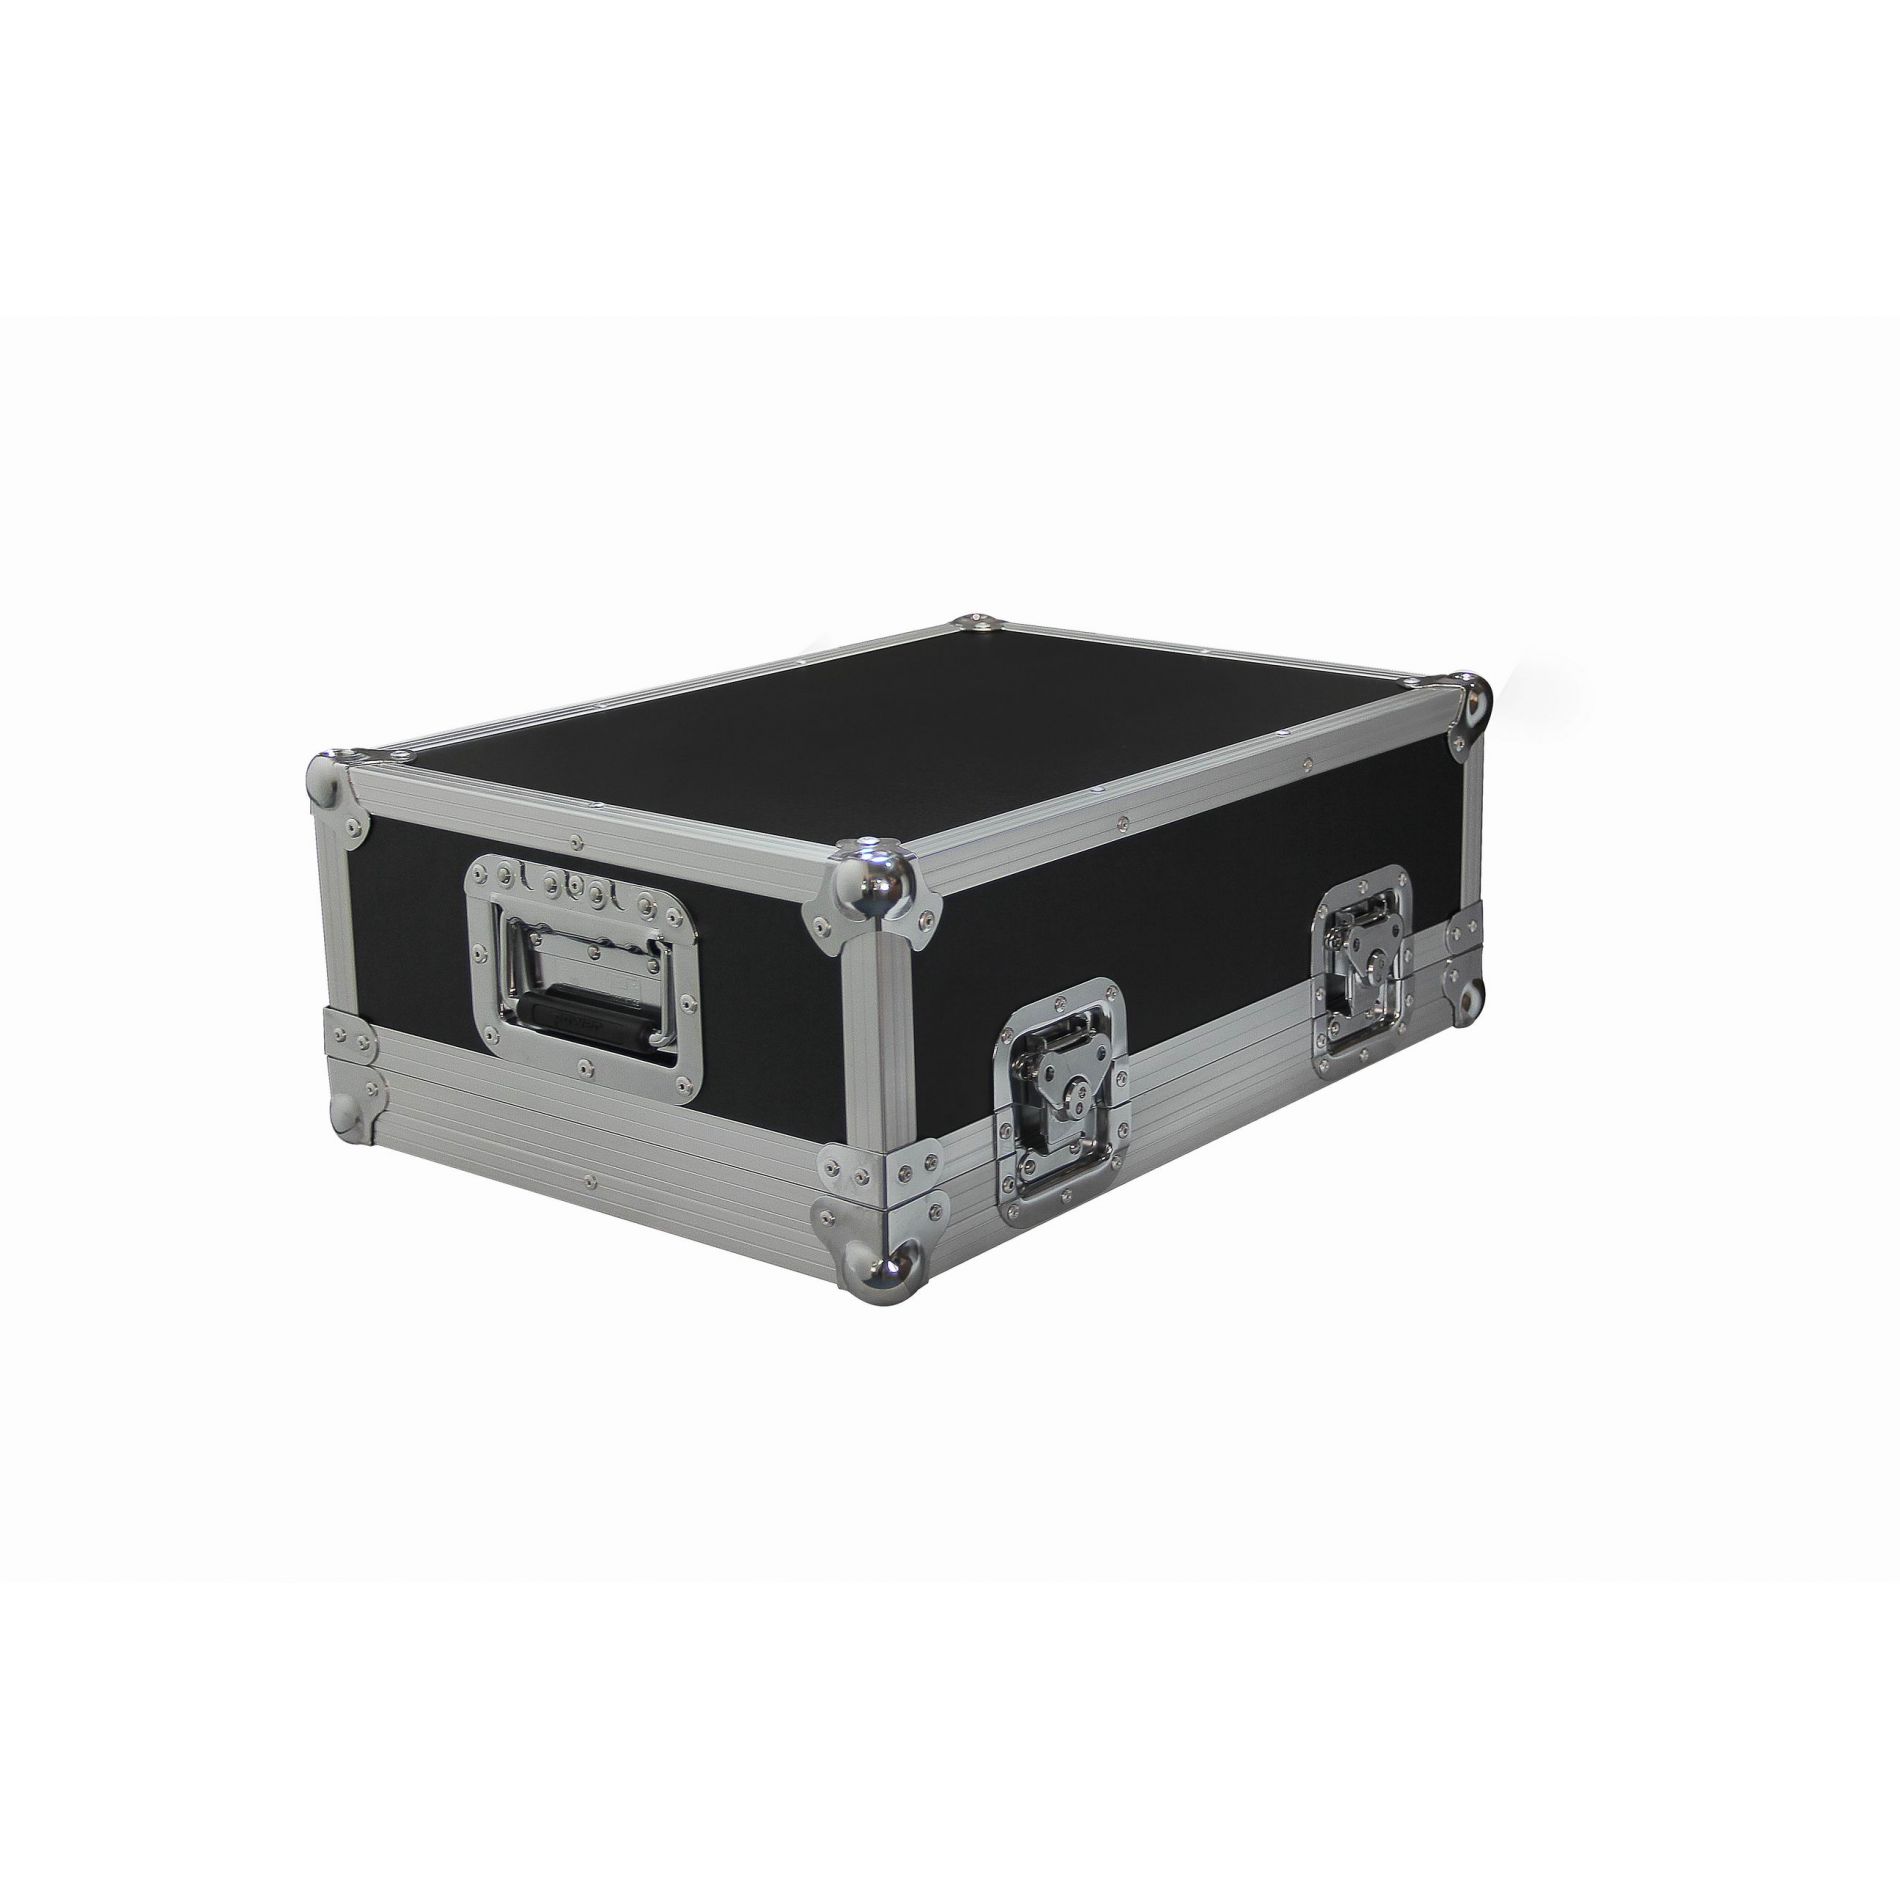 Power Acoustics Flight Case Pour Mixer - Xxs - Cajas de mezcladores - Variation 2